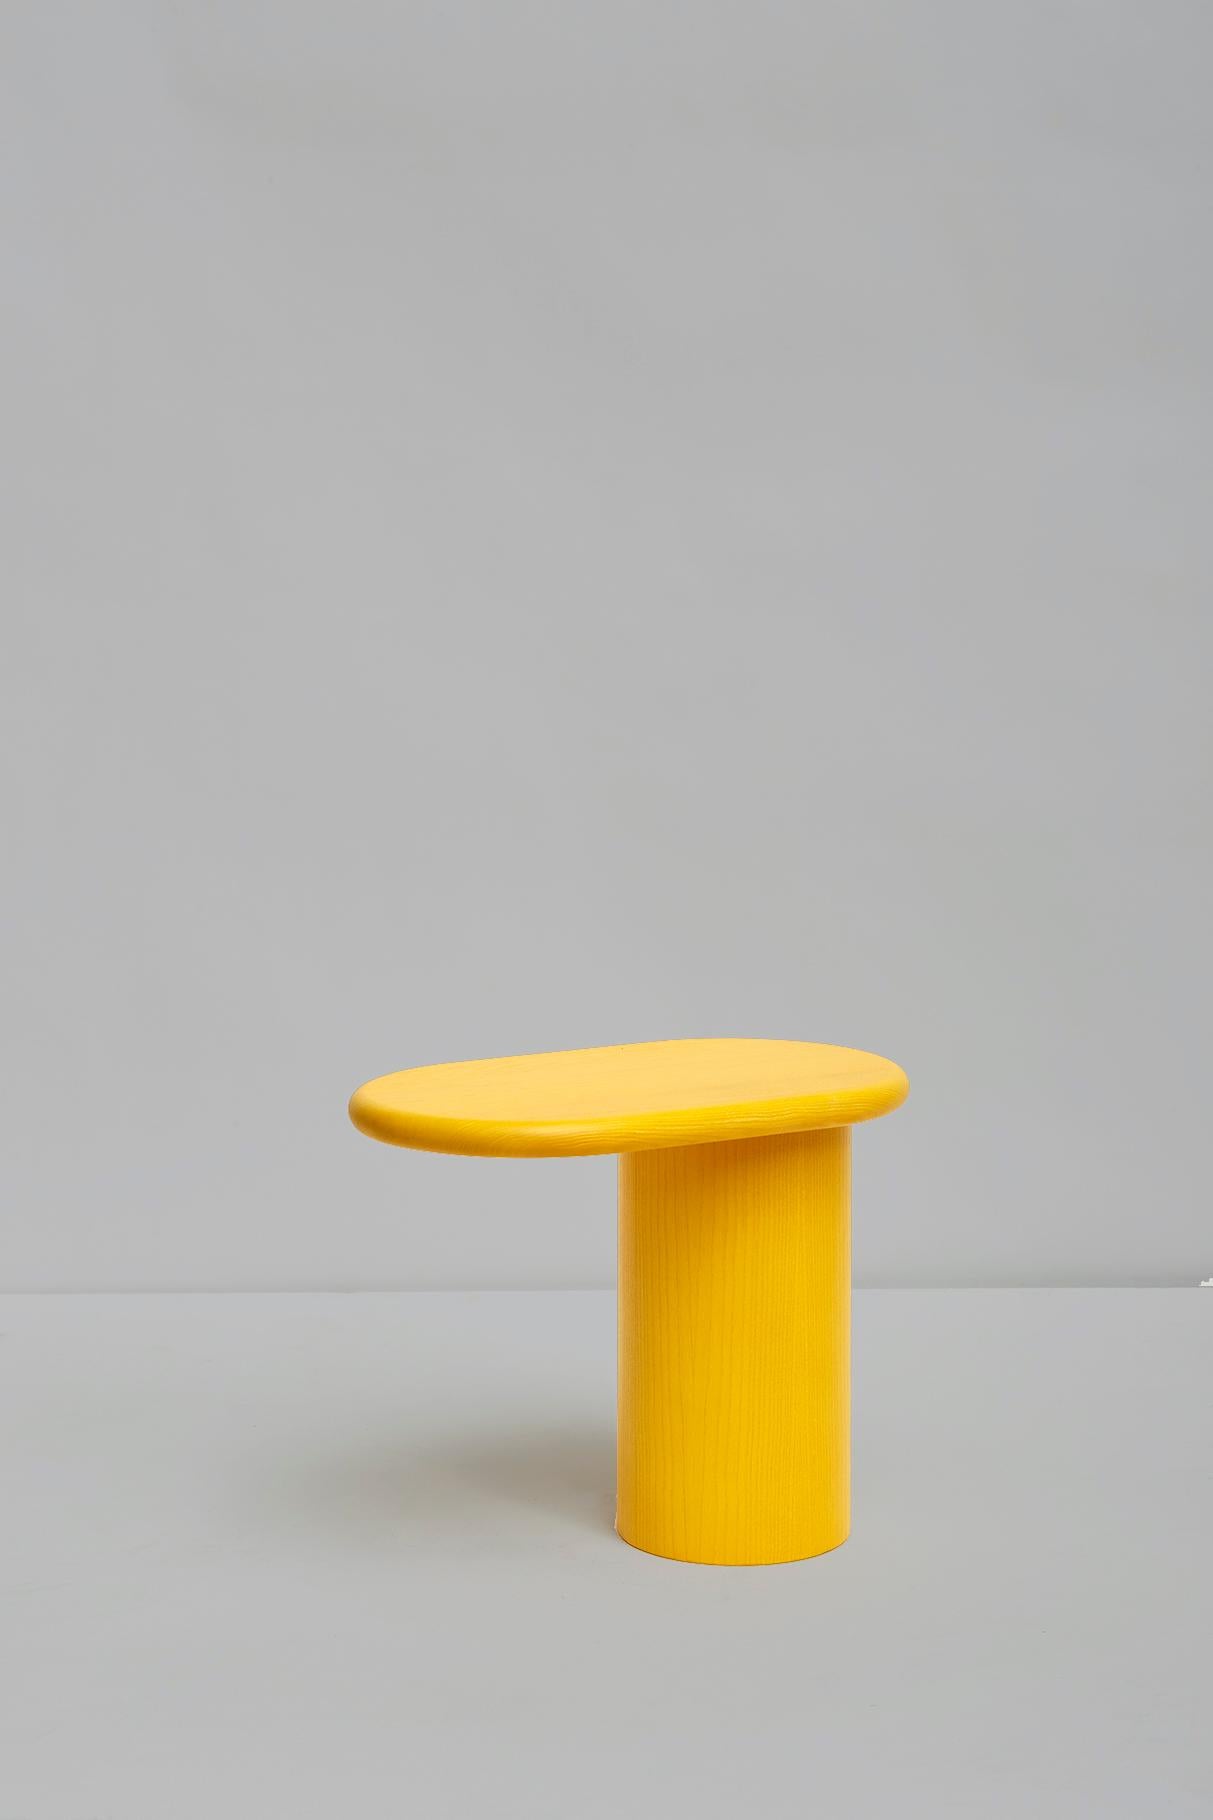 Petite table cantilever, table d'appoint 
Design par Matteo Zorzenoni, produit par Scapin Collezioni

Cantilever est une collection de petites tables caractérisées par leur déséquilibre visuel créé par le fait que son plateau en porte-à-faux est